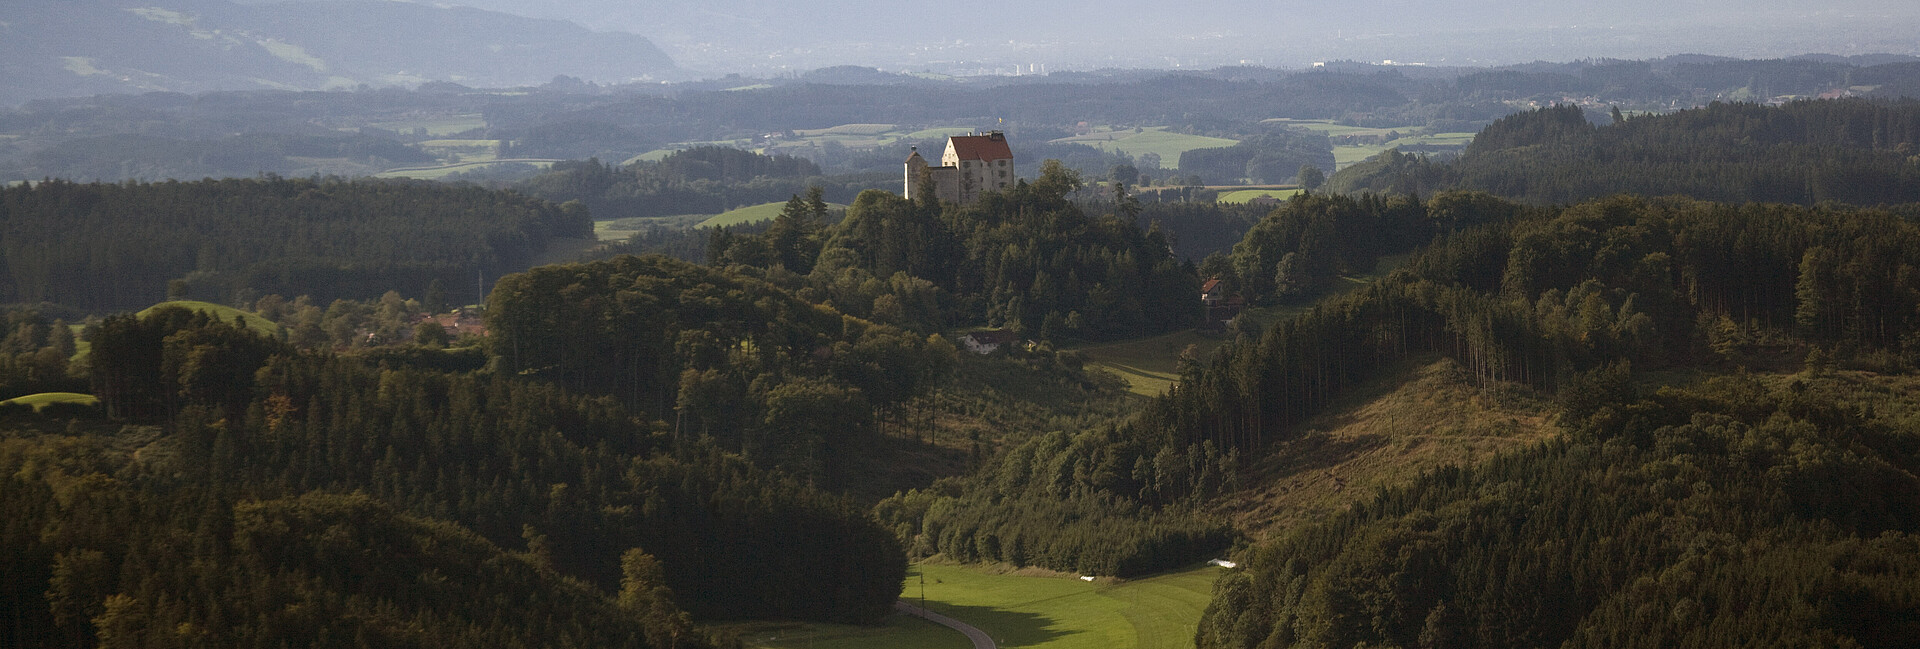 Blick von oben auf Landschaft bei Waldburg